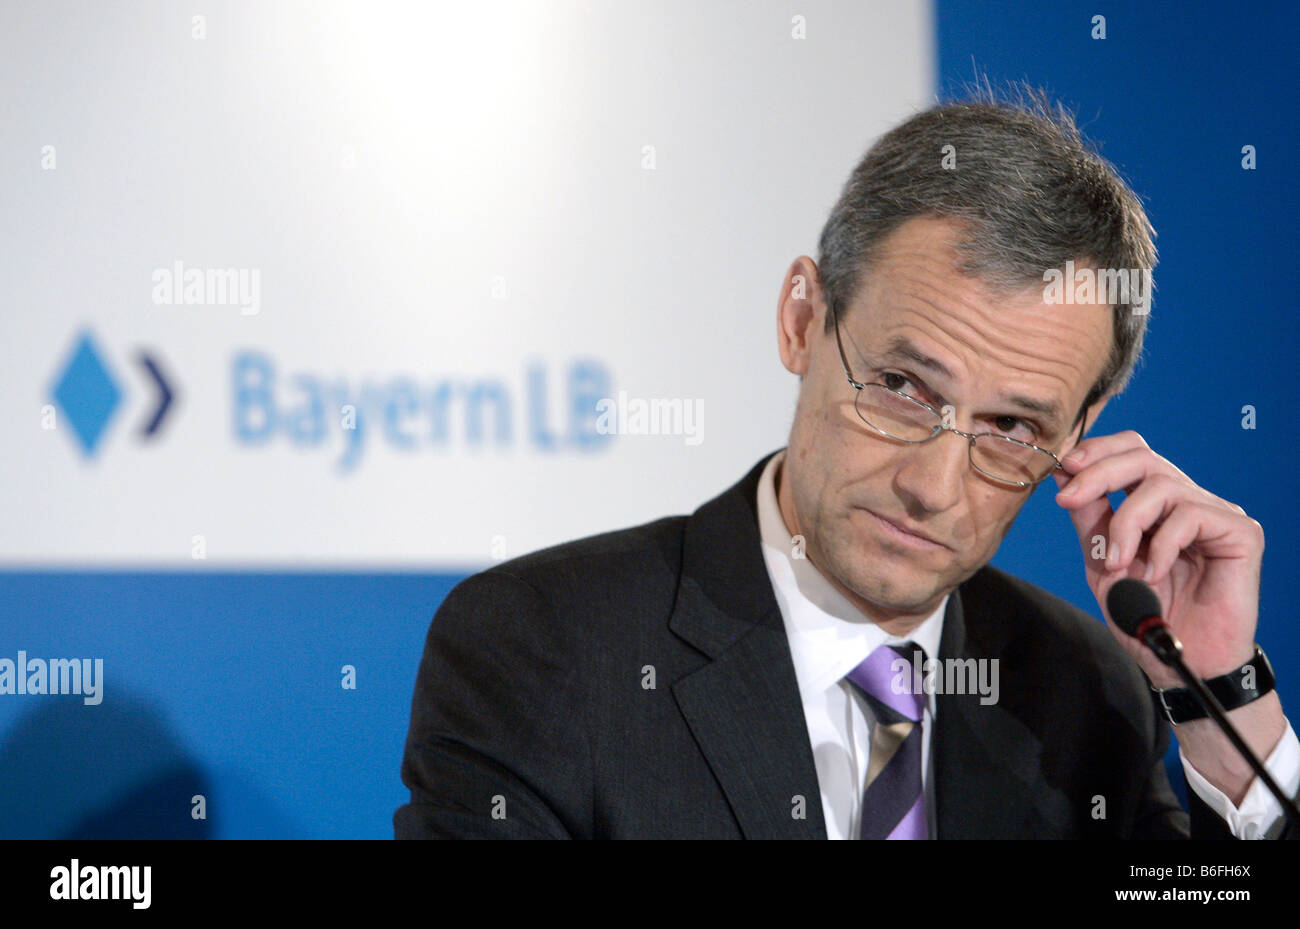 Michael Kemmer, presidente del Bayern LB, durante la conferencia de prensa sobre los resultados anuales en 03/04/2008 en Múnich, Baviera, Alemania, Foto de stock